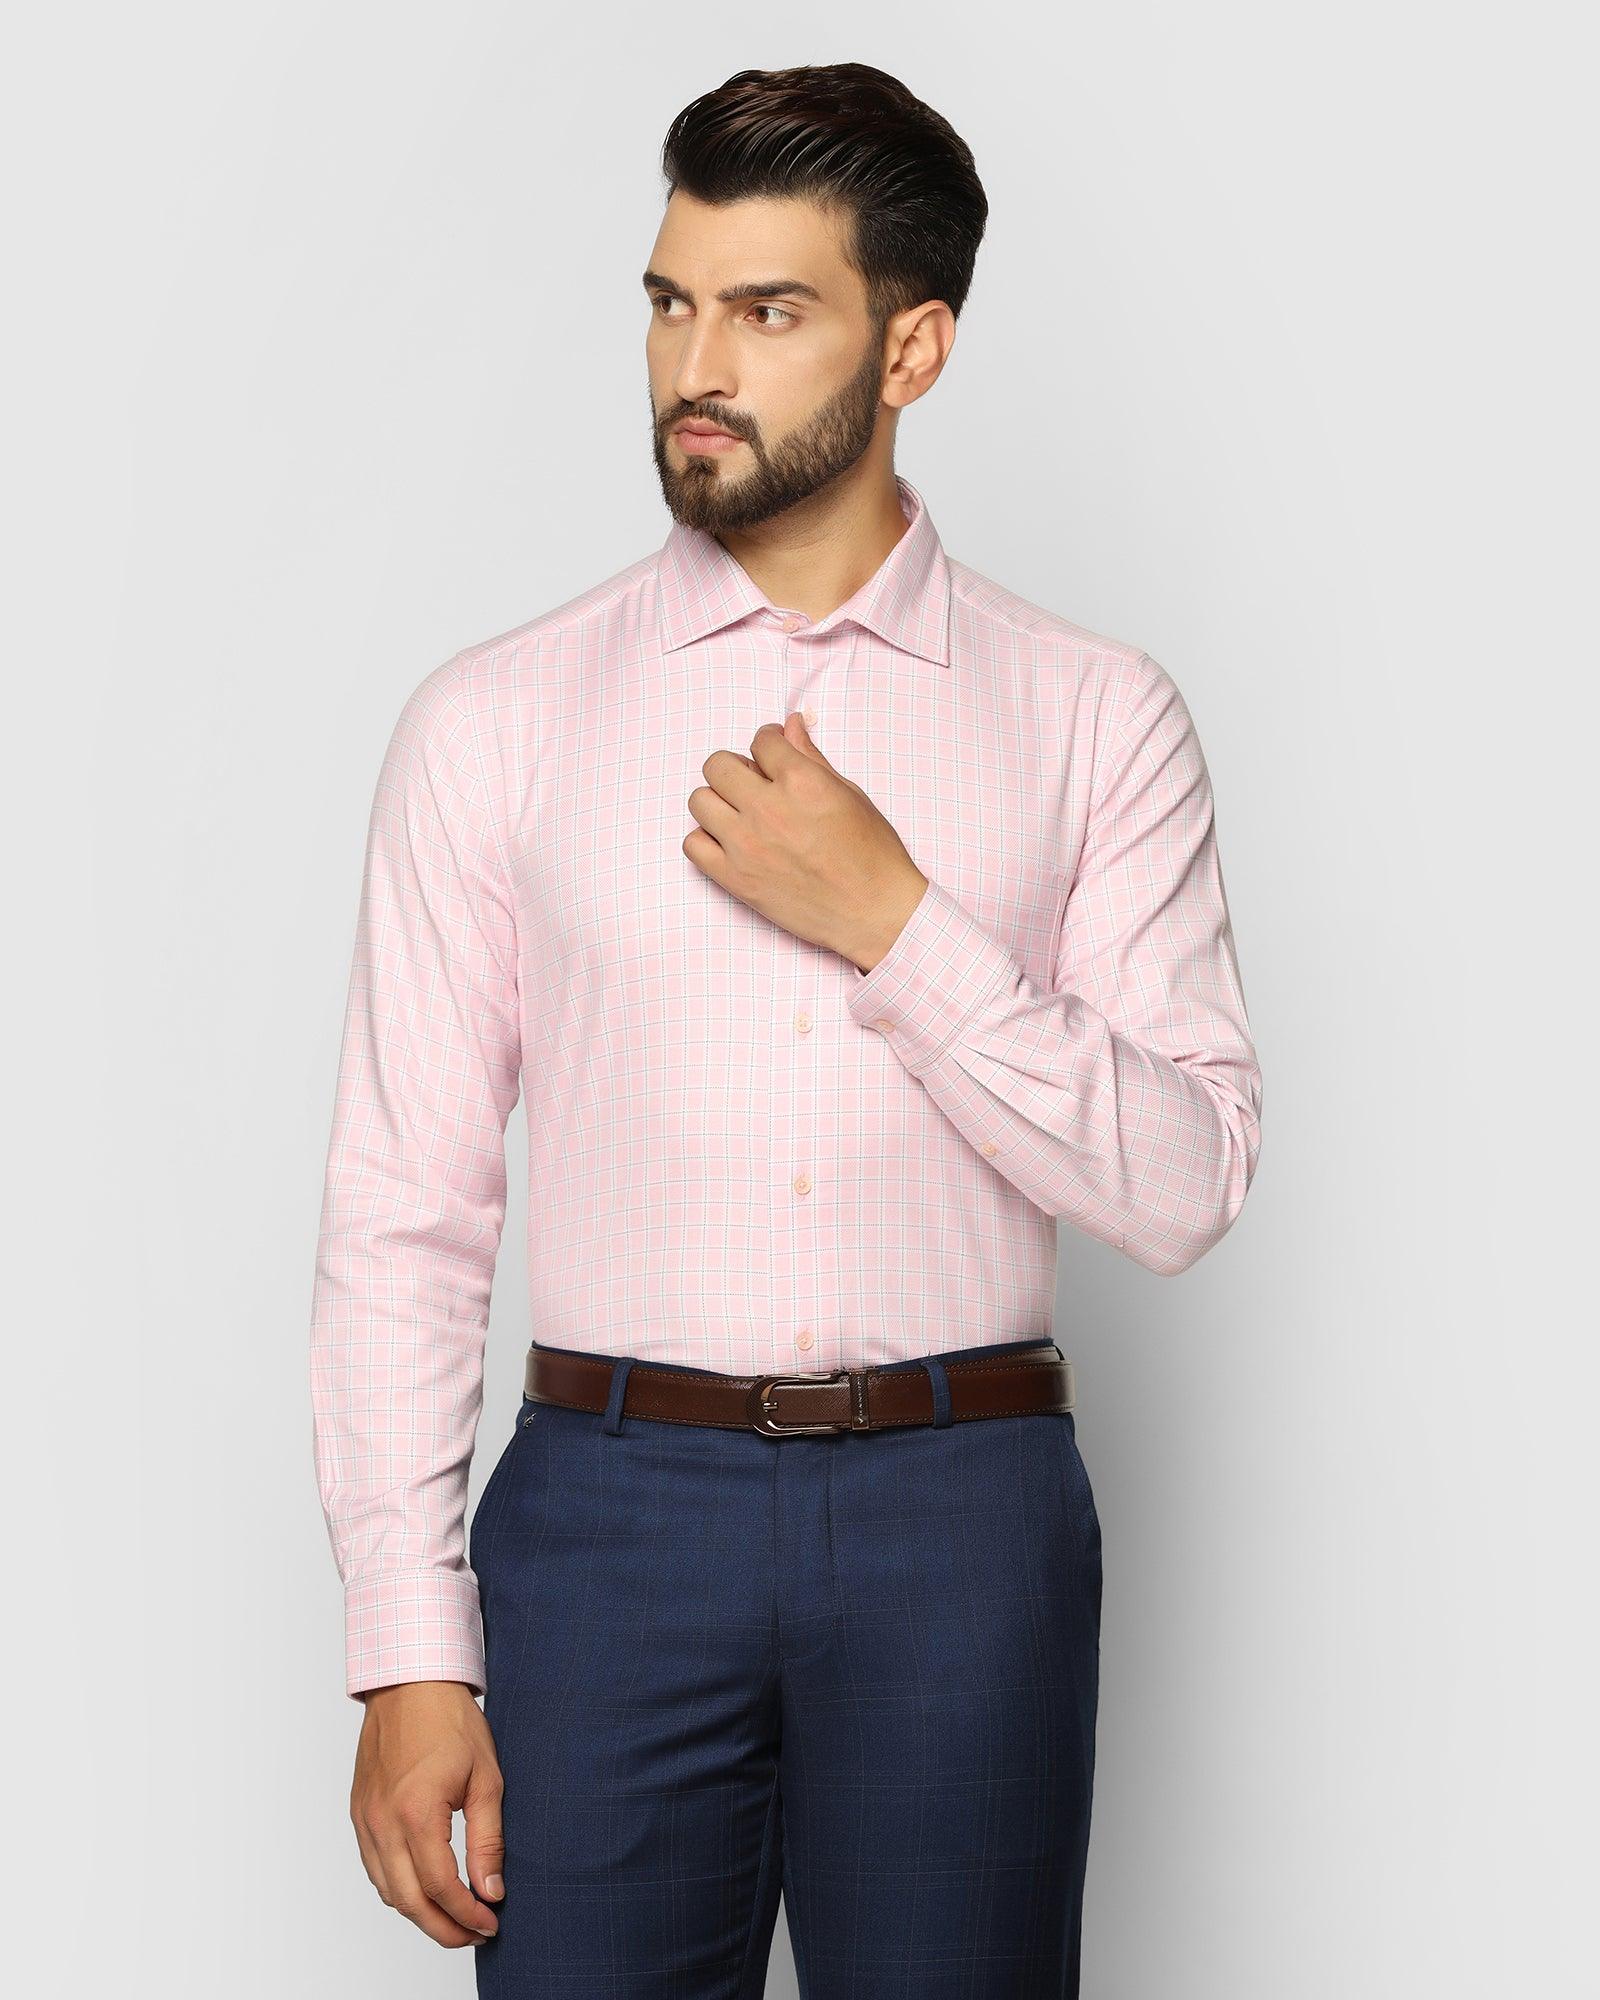 Temptech Formal Pink Check Shirt - Rapid